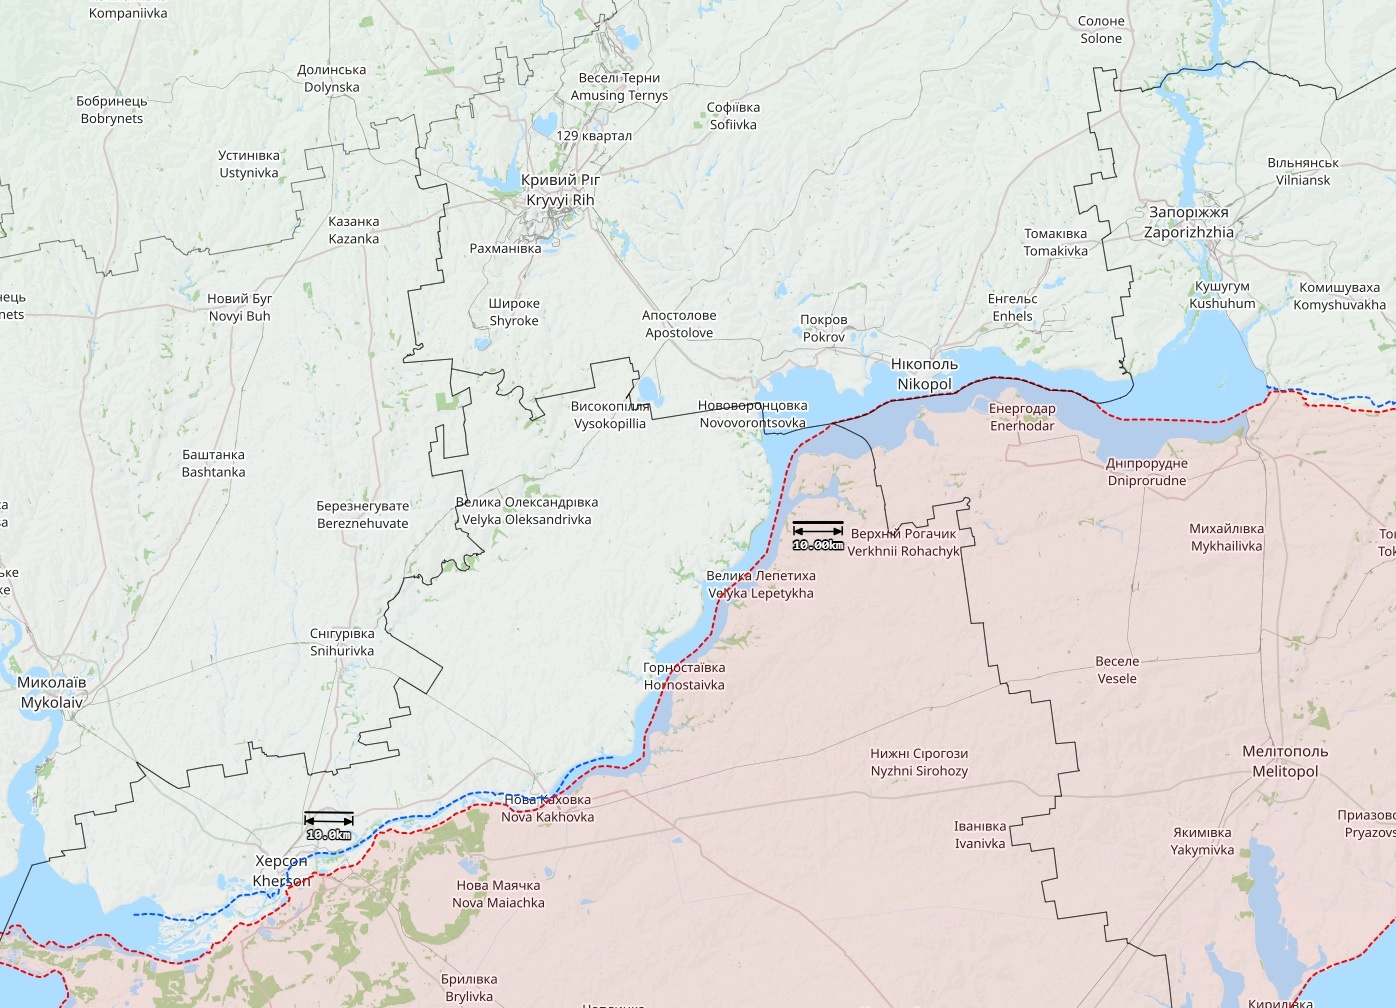 Rintamatilanne Etelä-Ukrainassa Hersonin ja Zaporizhzhjan välisellä alueella 7. huhtikuuta 2023. Kartta: The War in Ukraine -tilannekartta (Emil Kastehelmi/John Helin/Eerik Matero & OSINT-tiimi).